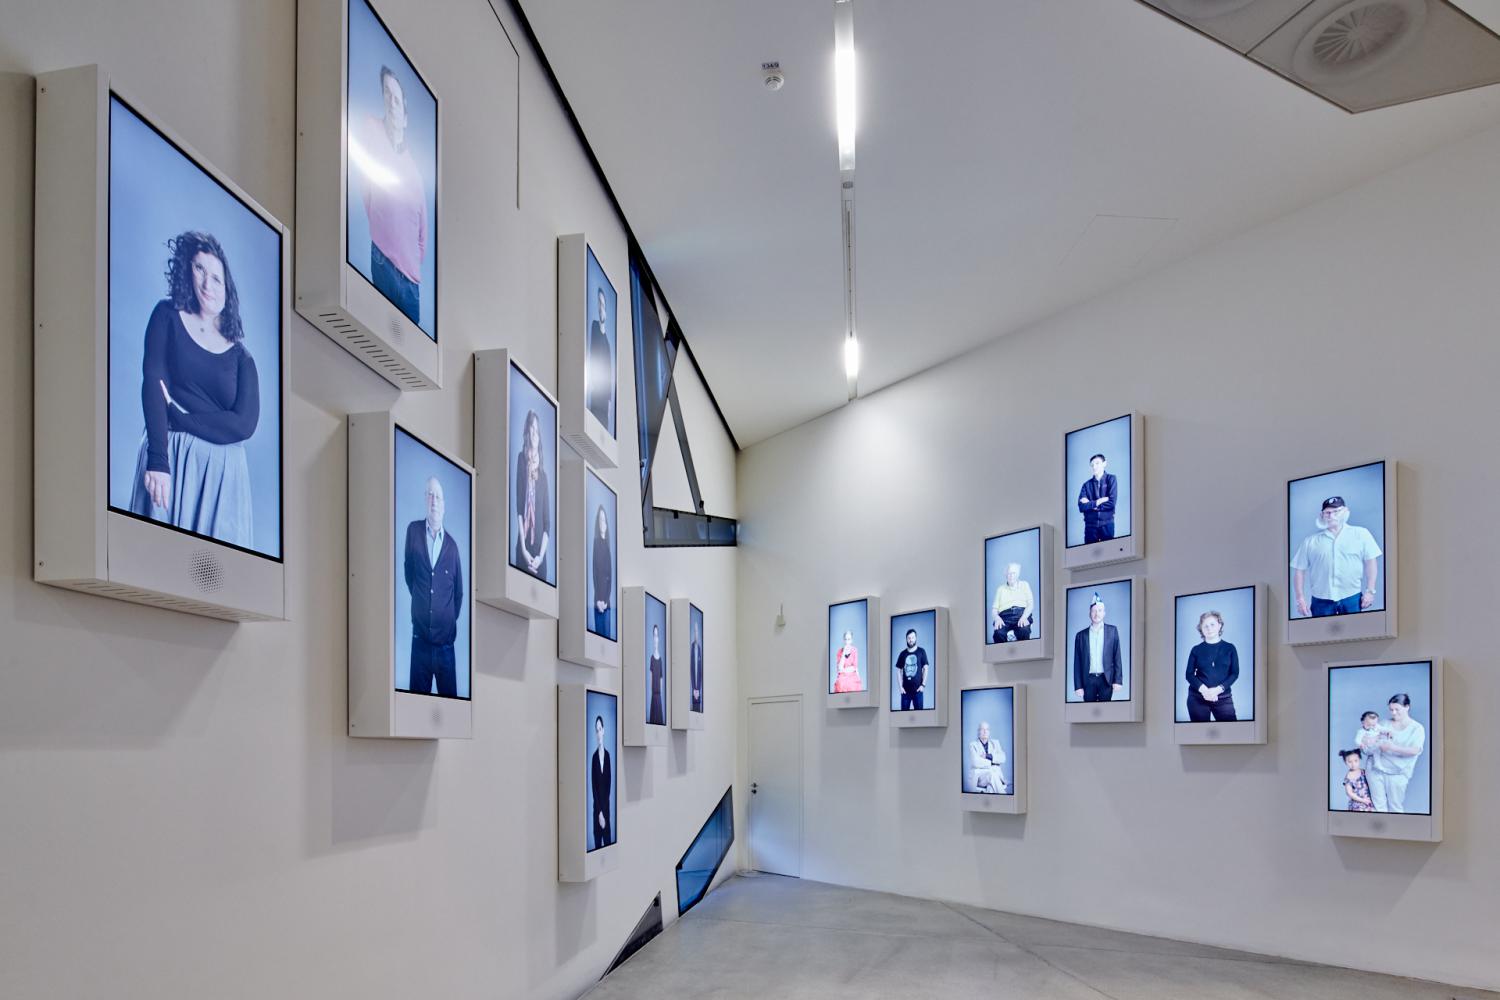 Blick auf die Installation "Mesubin" von Yael Reuveny und Clemens Walter am Schluss der Dauerausstellung; Jüdisches Museum Berlin